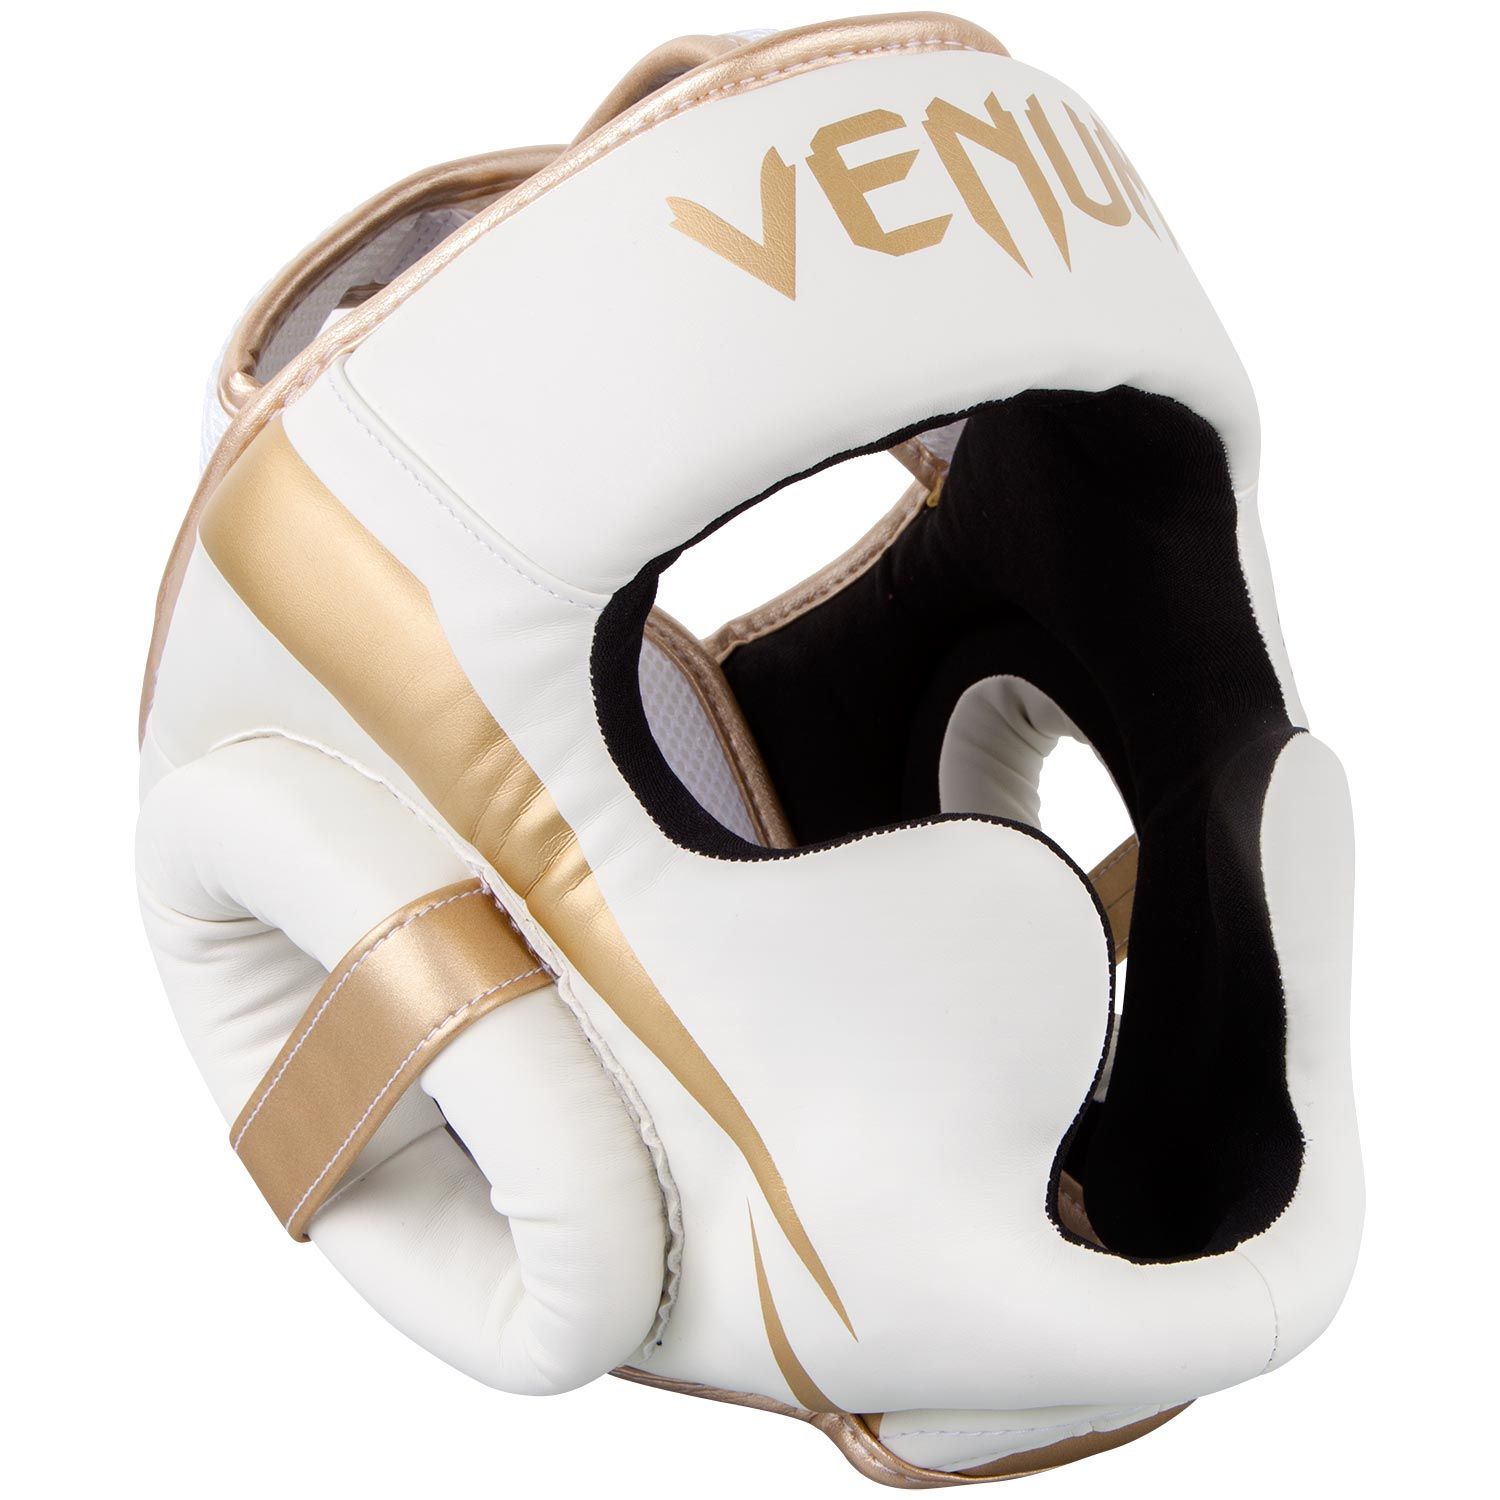 Venum Elite Kopfschutz-Weiß/Gold